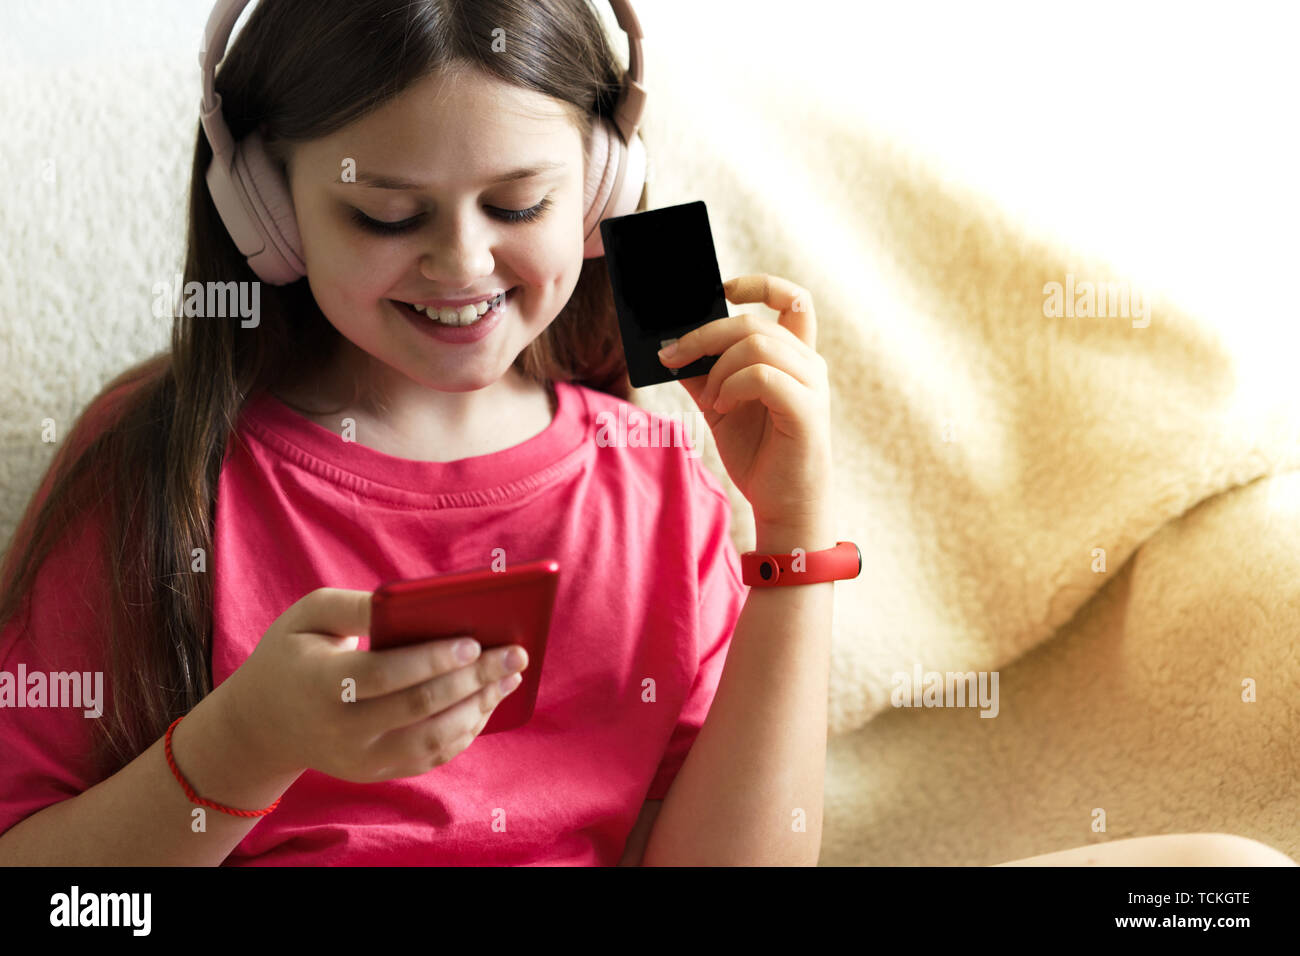 Allegro ragazza in rosa cuffie e una T-shirt rossa si siede con un telefono in mano e una carta di credito. Il concetto di gadget e i bambini di shopping onli Foto Stock